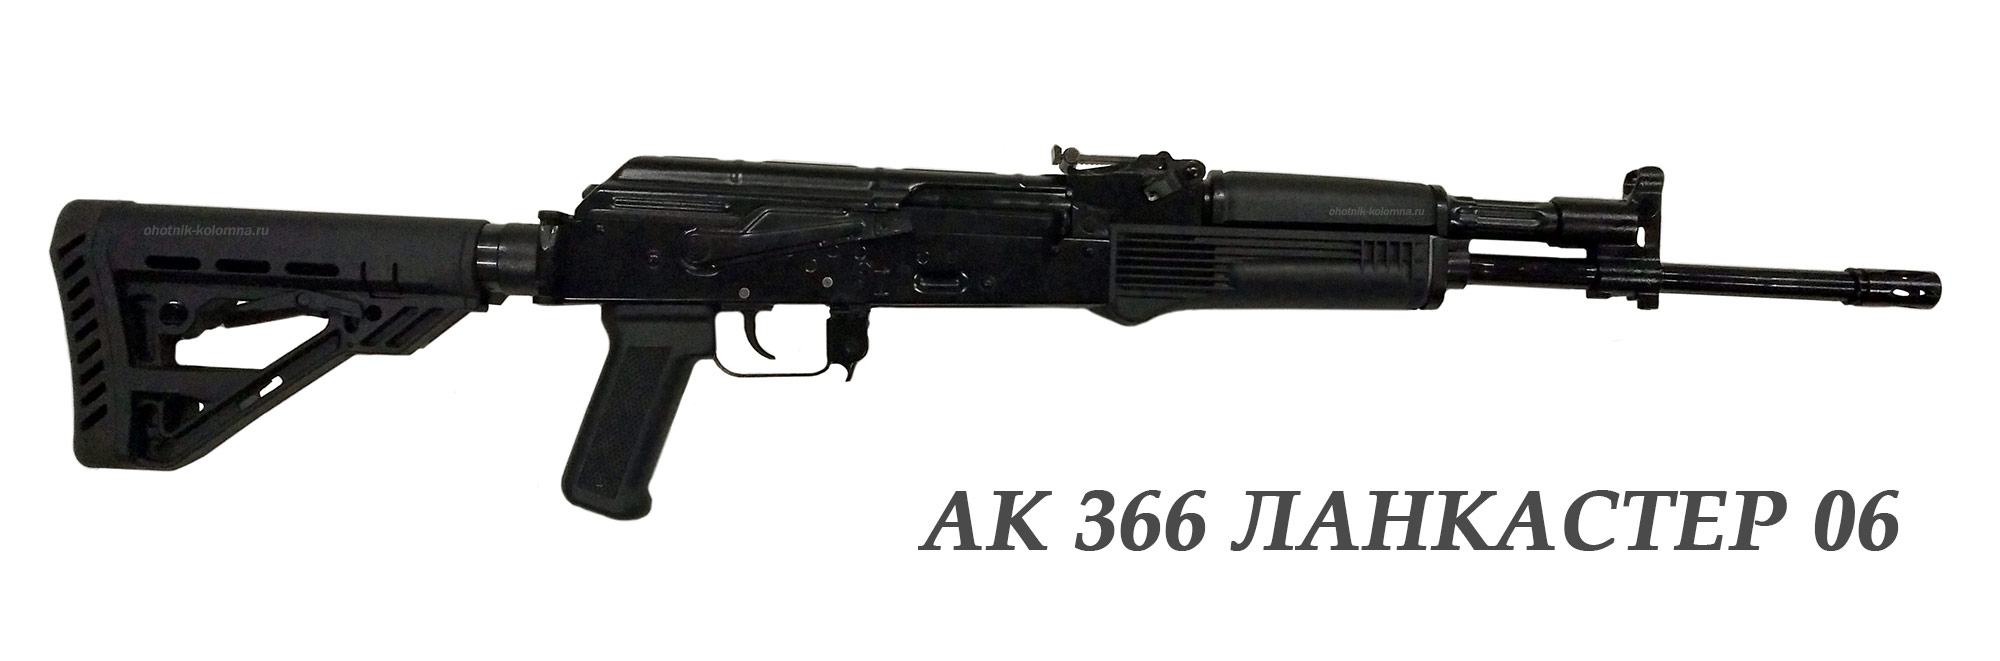 Акс-366 Lancaster